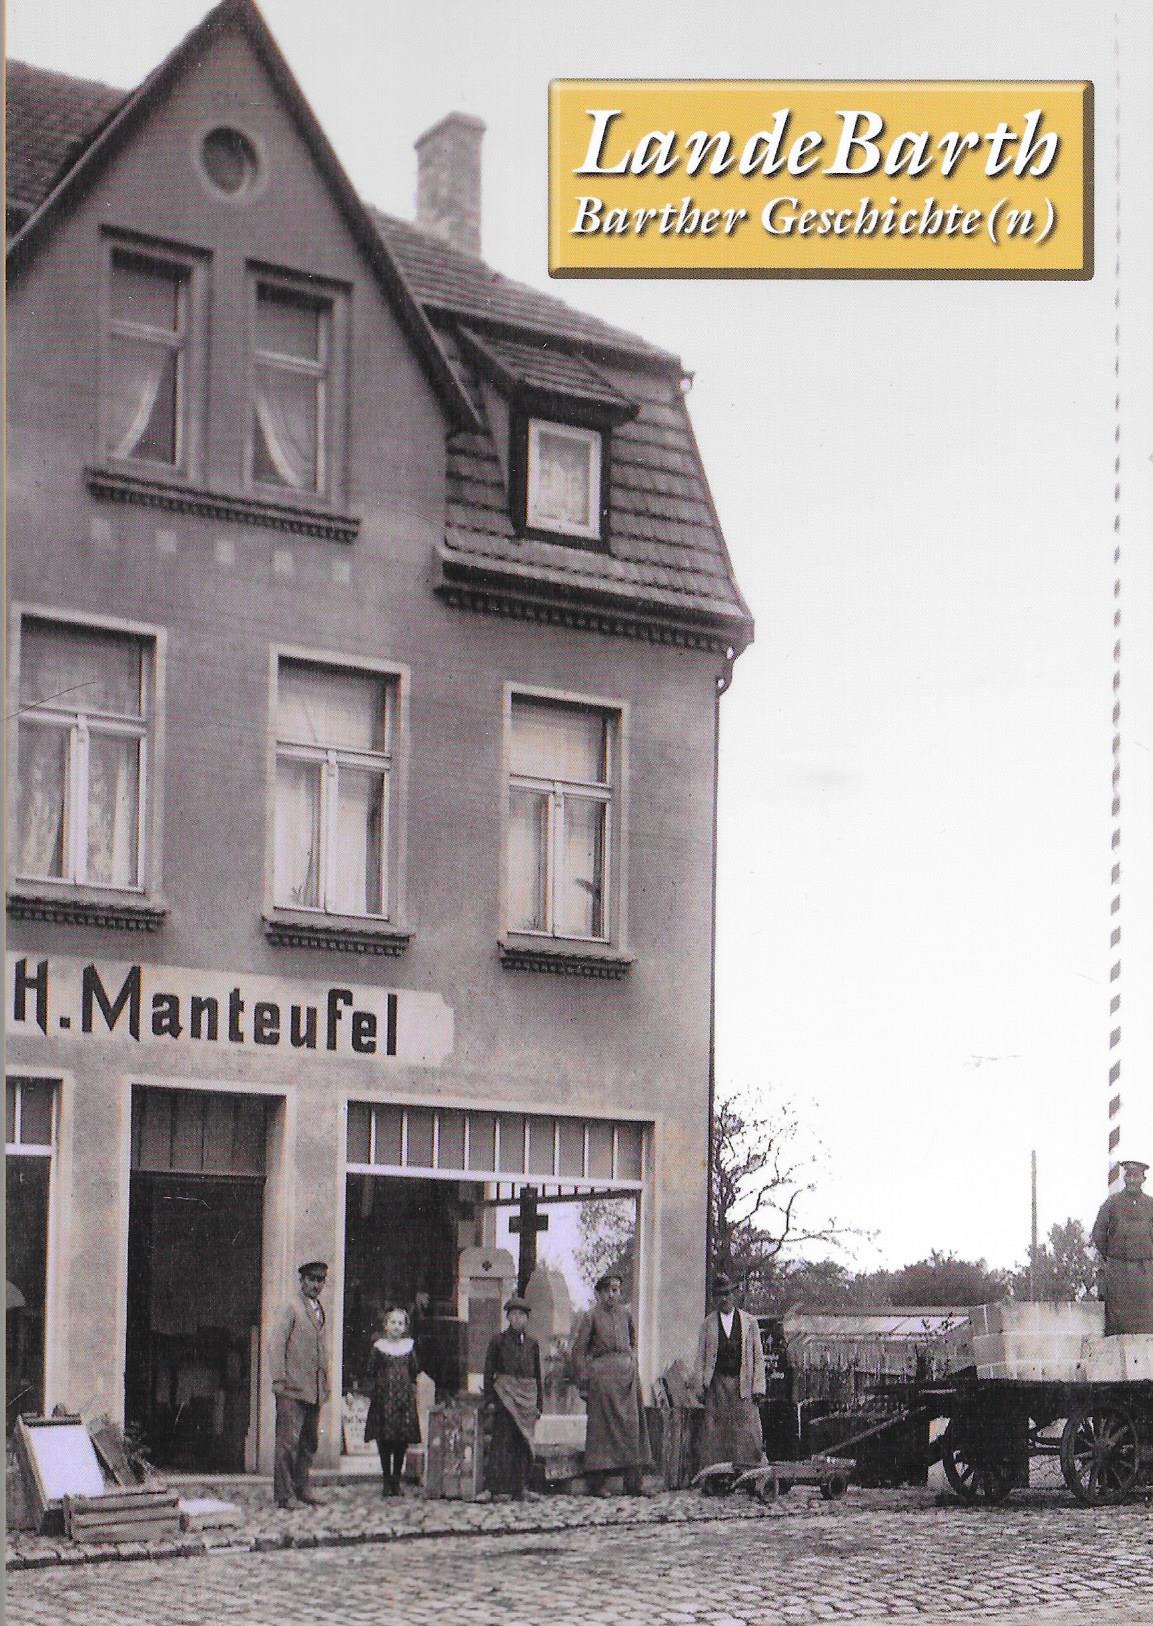 lande Barth Barther Geschichte(n) Jahrgang 6 / 1.Auflage 2014 - Verlag Redieck & Schade GmbH, Bather Heimatverein e.V.